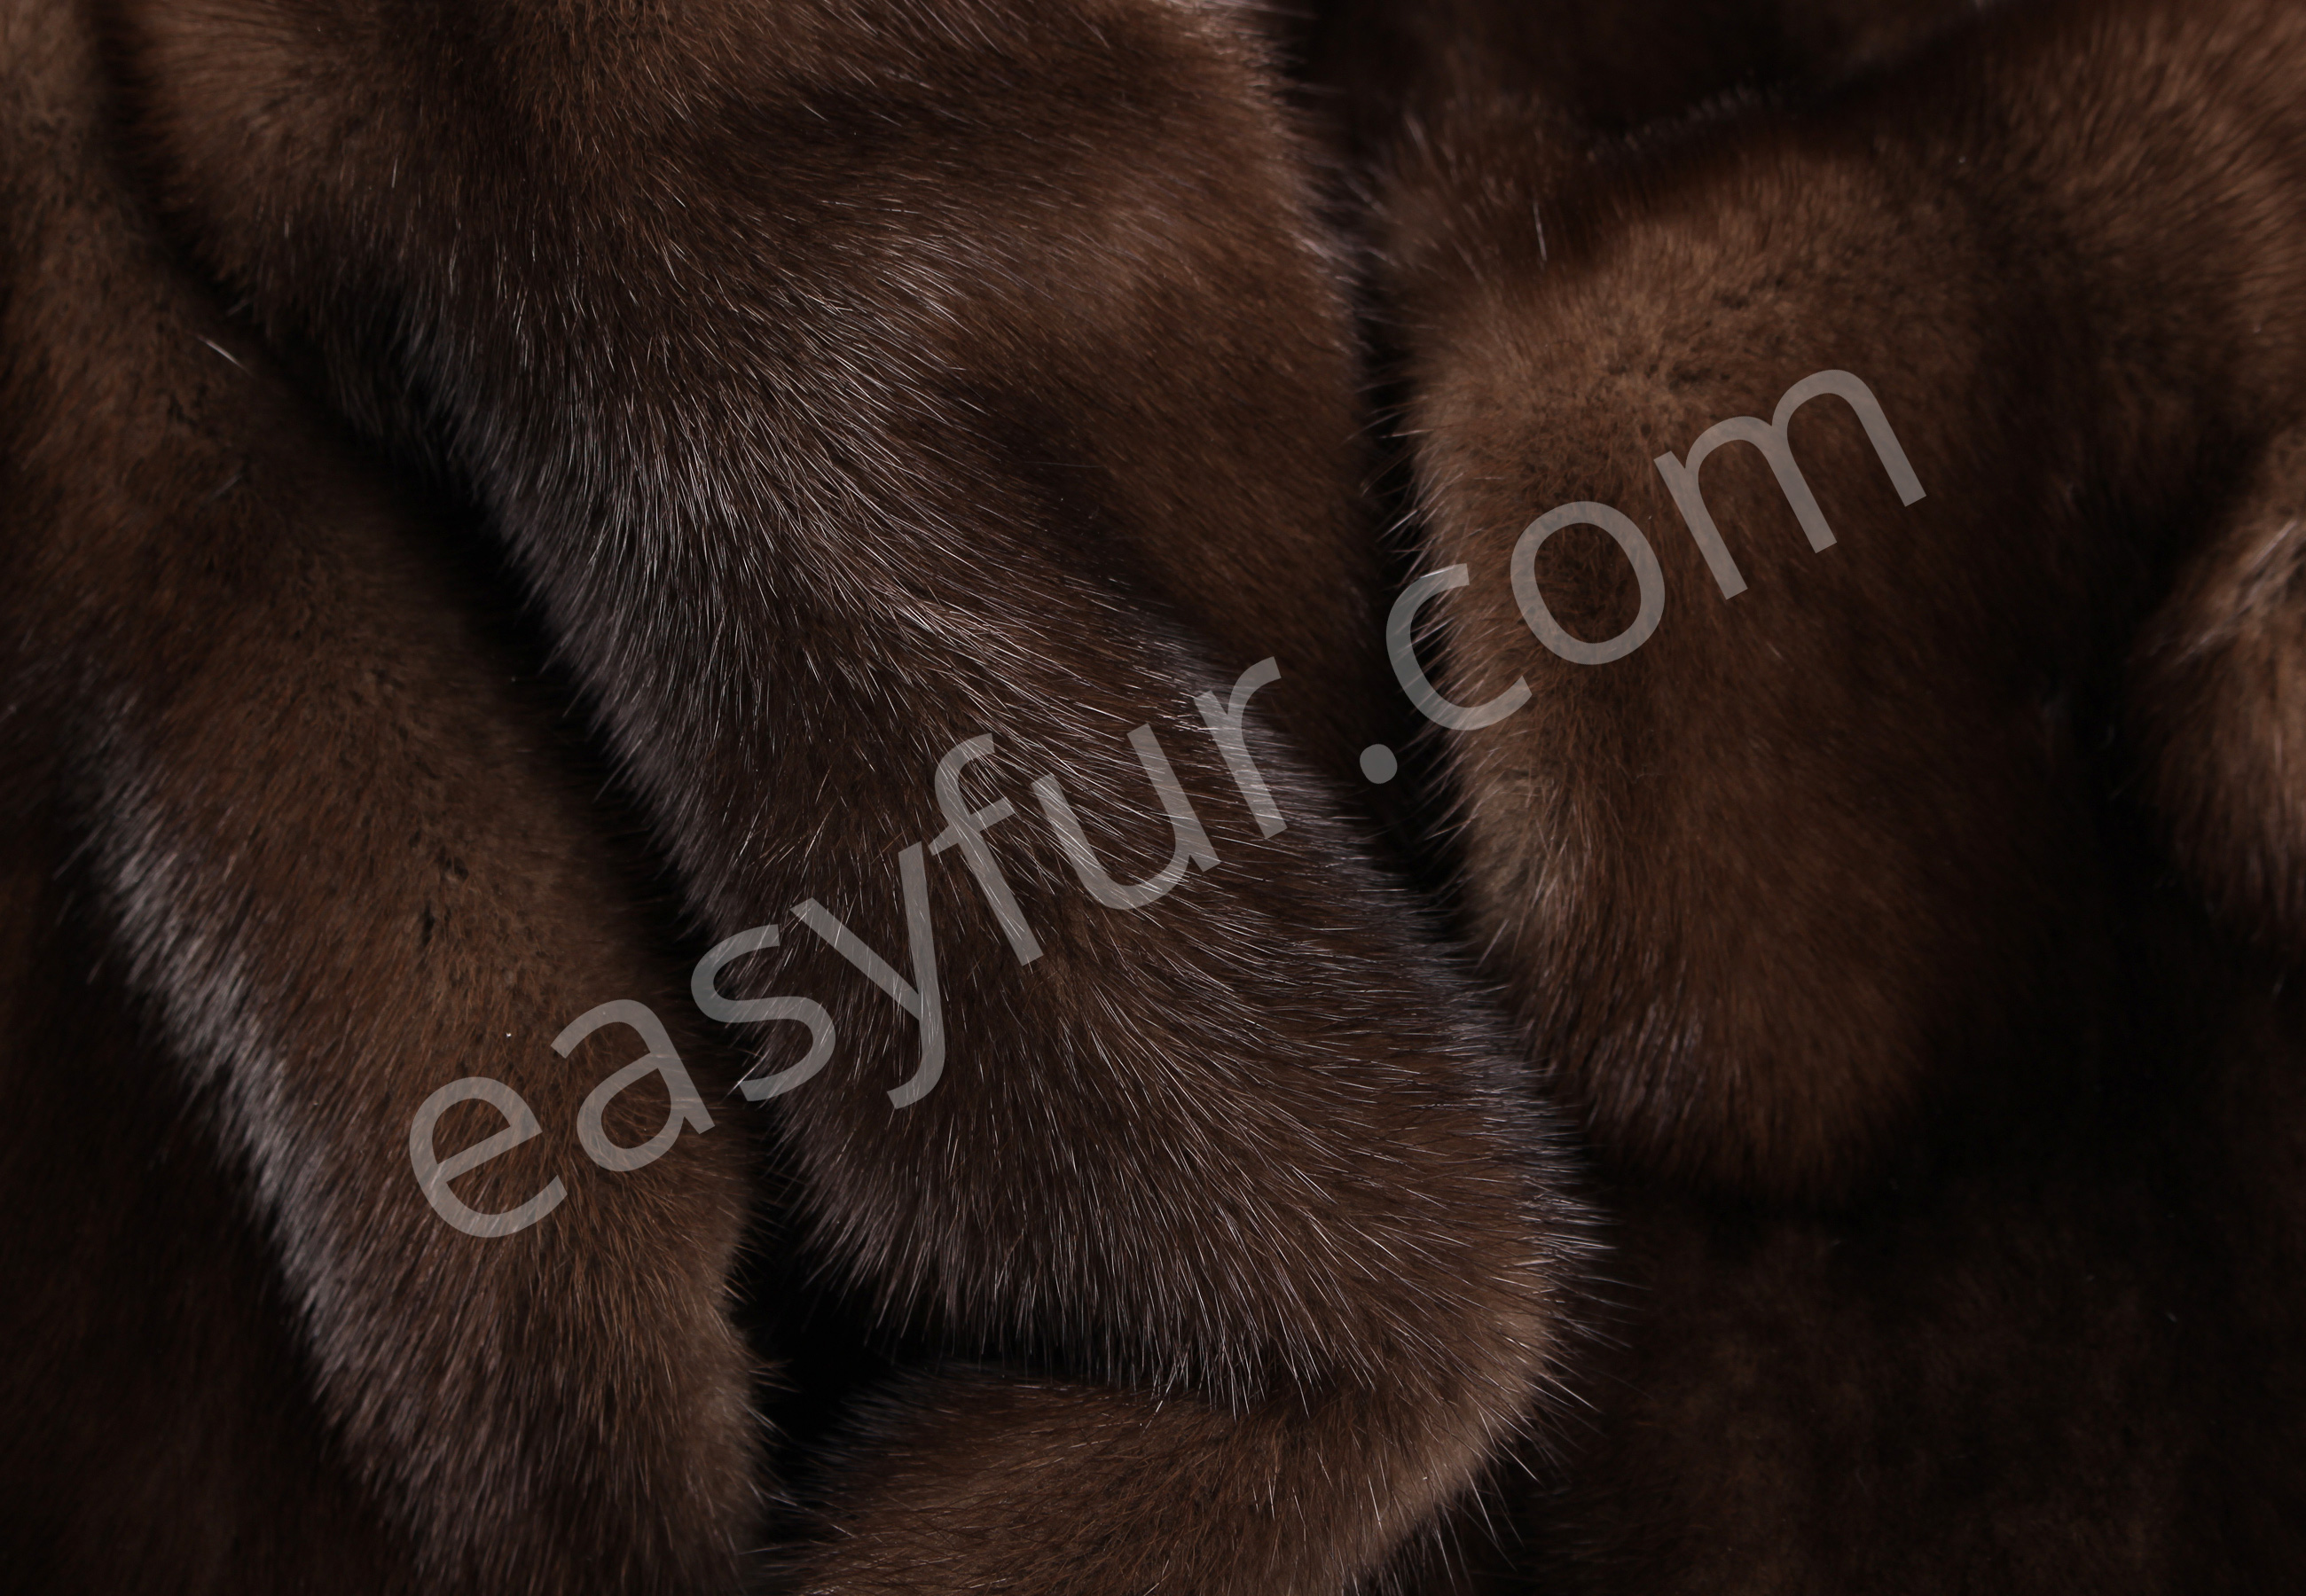 Glow Nerz Felle - Kopenhagen Fur